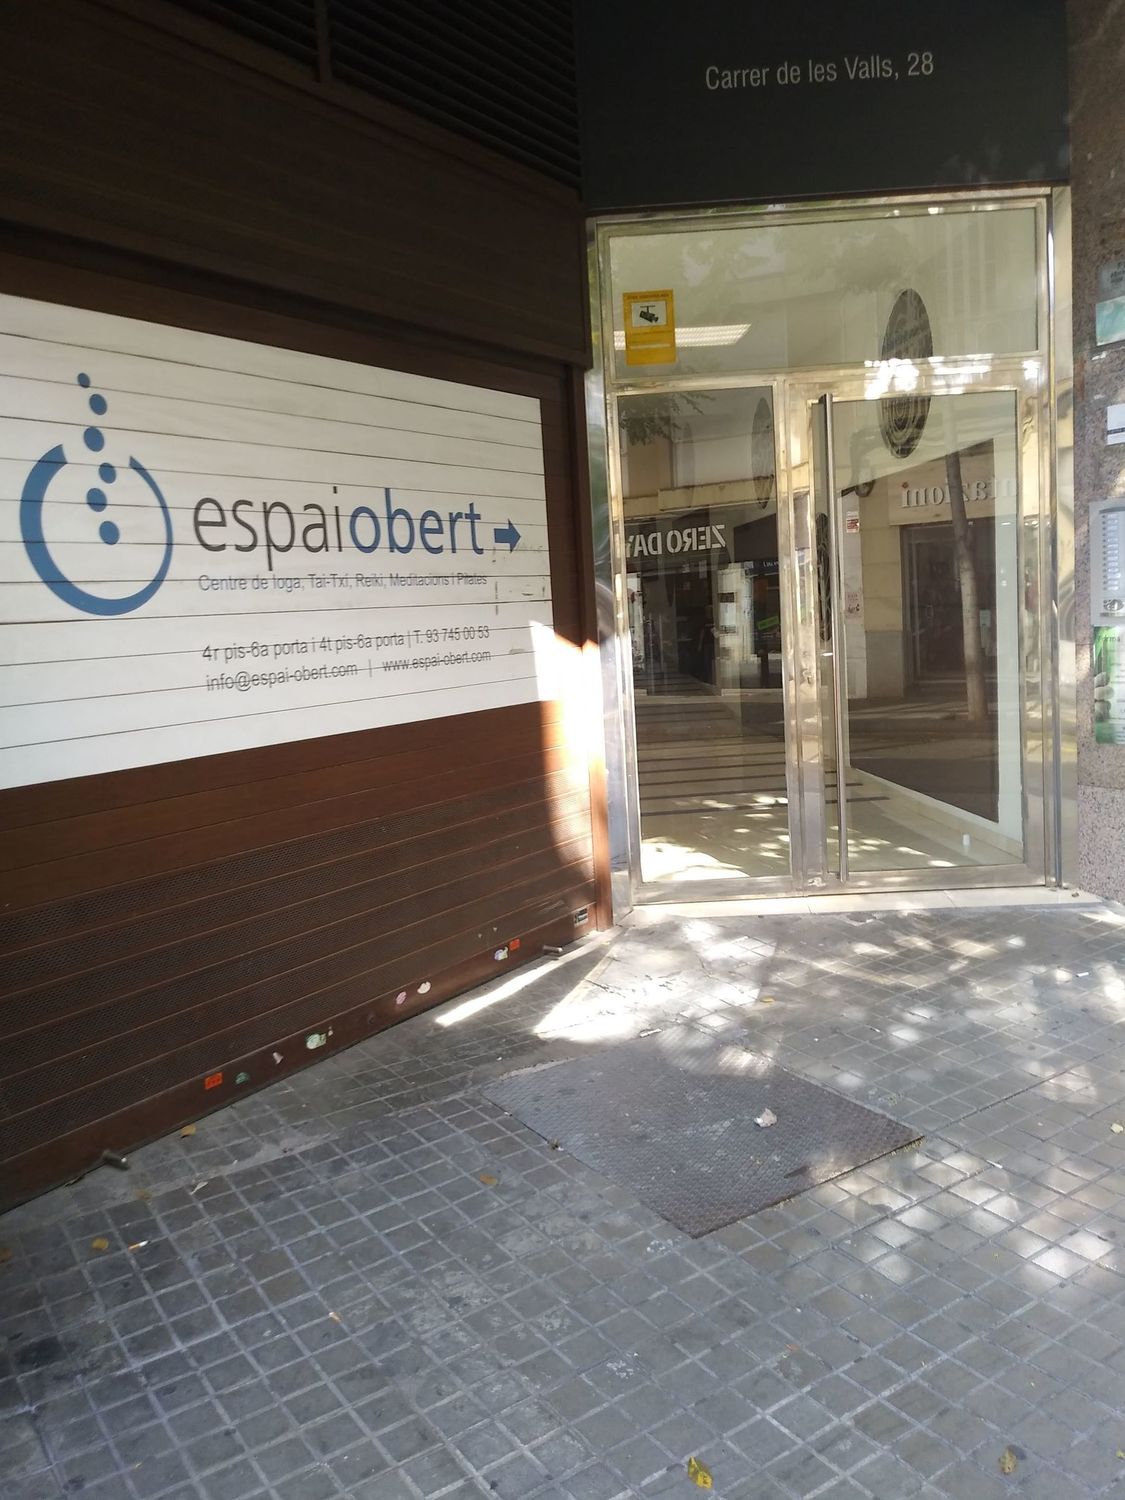 Foto de la galería de Puerta, de acceso a edificio de oficinas, nº 28 C/ Les Valls Sabadell,  4º piso, 5ª puerta está el despacho. Josep Guasch, coaching y psicoterapia.